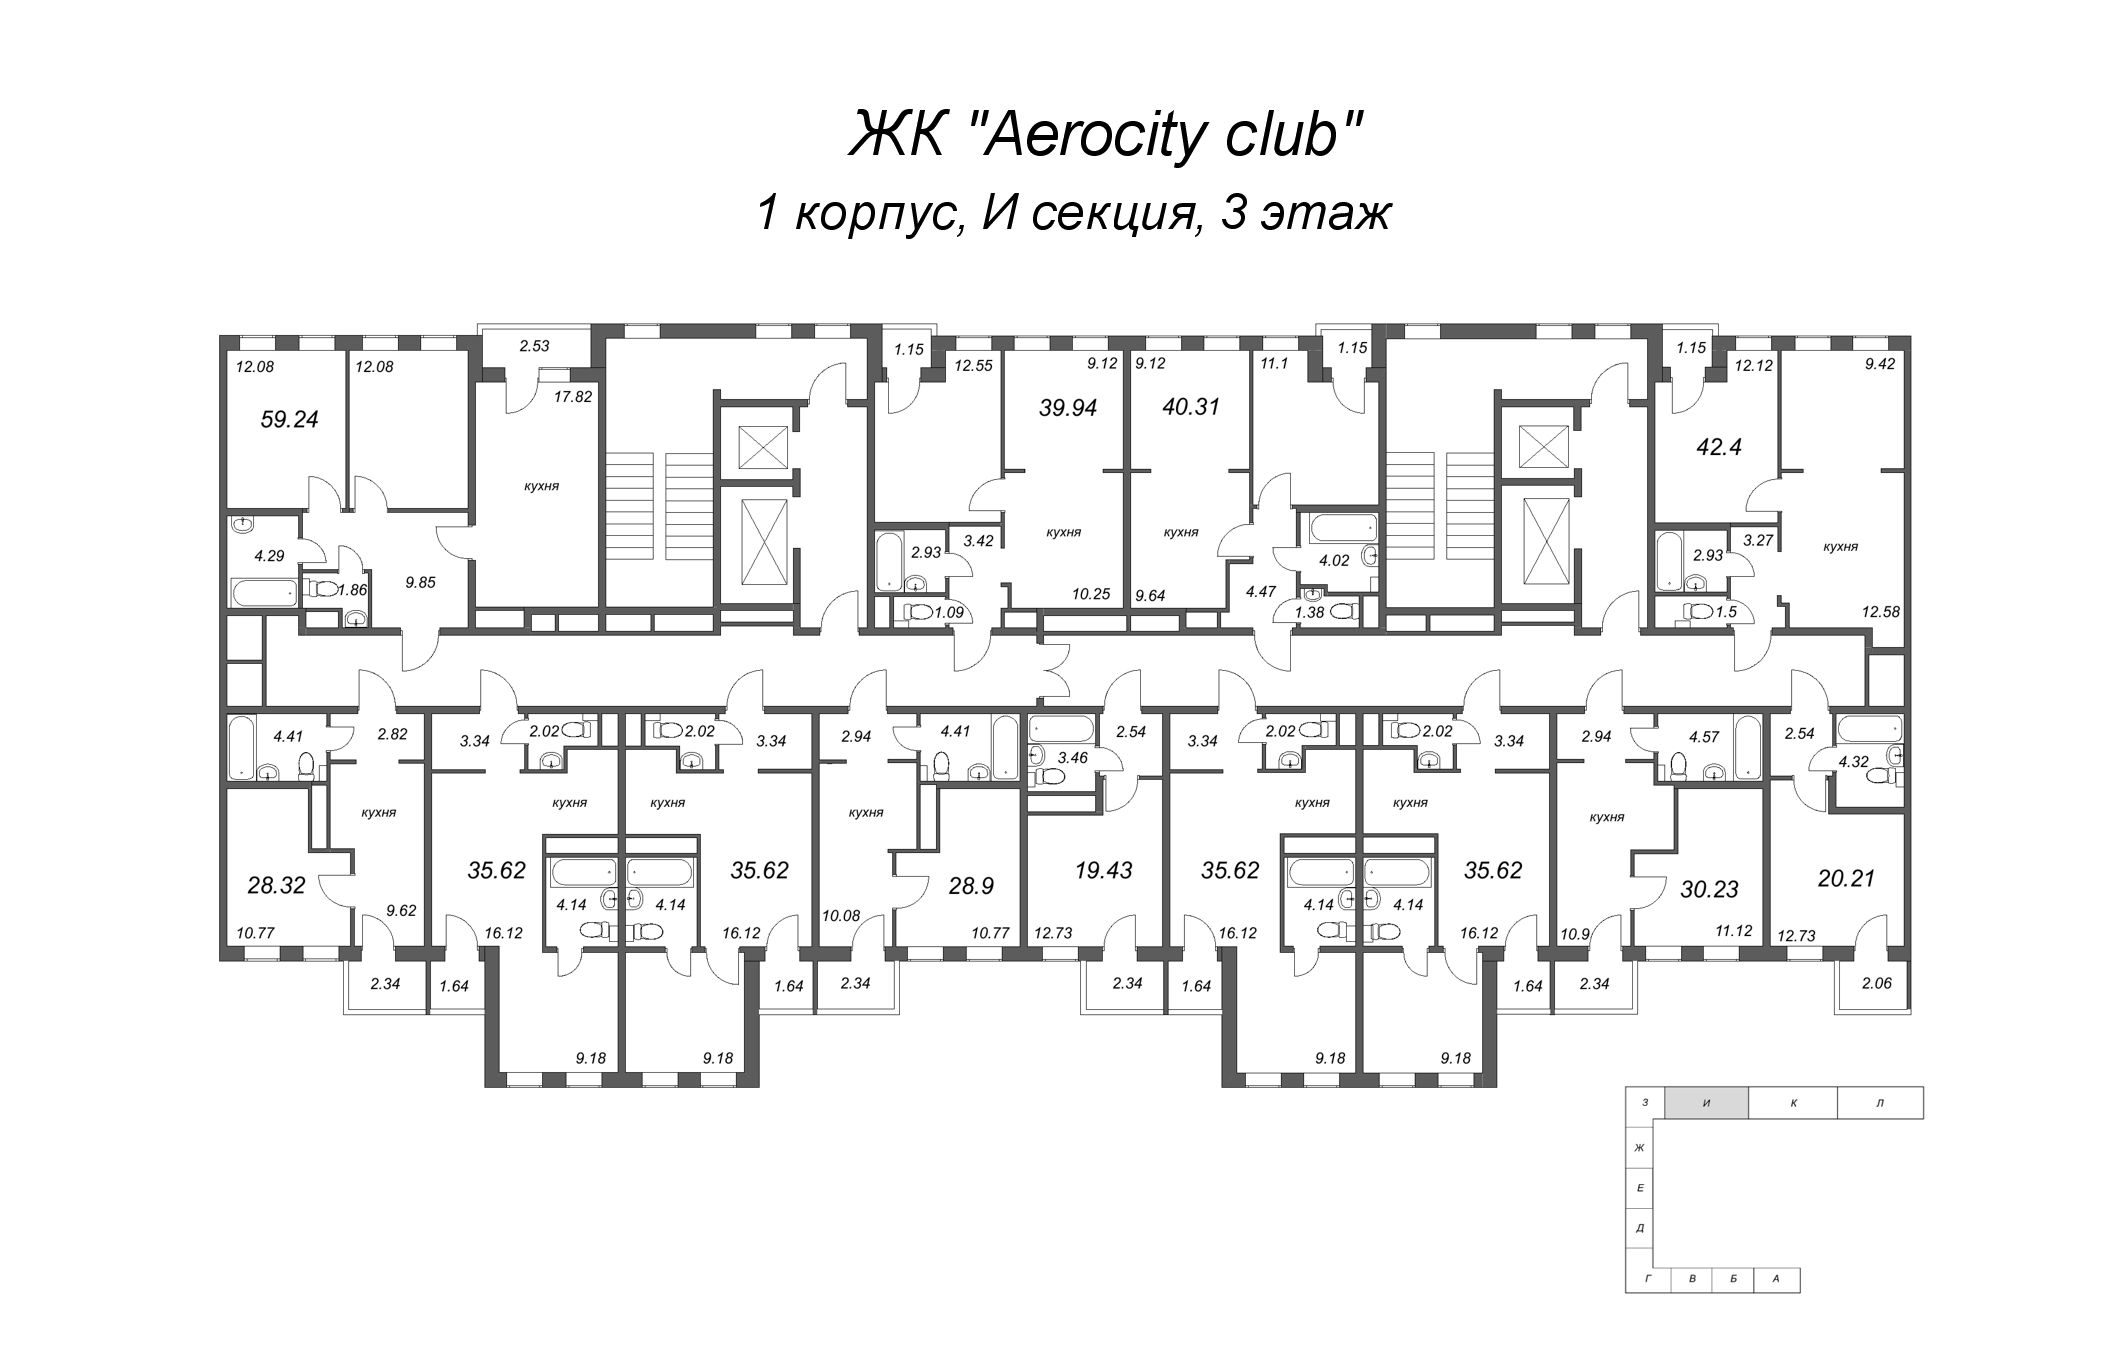 2-комнатная (Евро) квартира, 35.62 м² в ЖК "AEROCITY Club" - планировка этажа